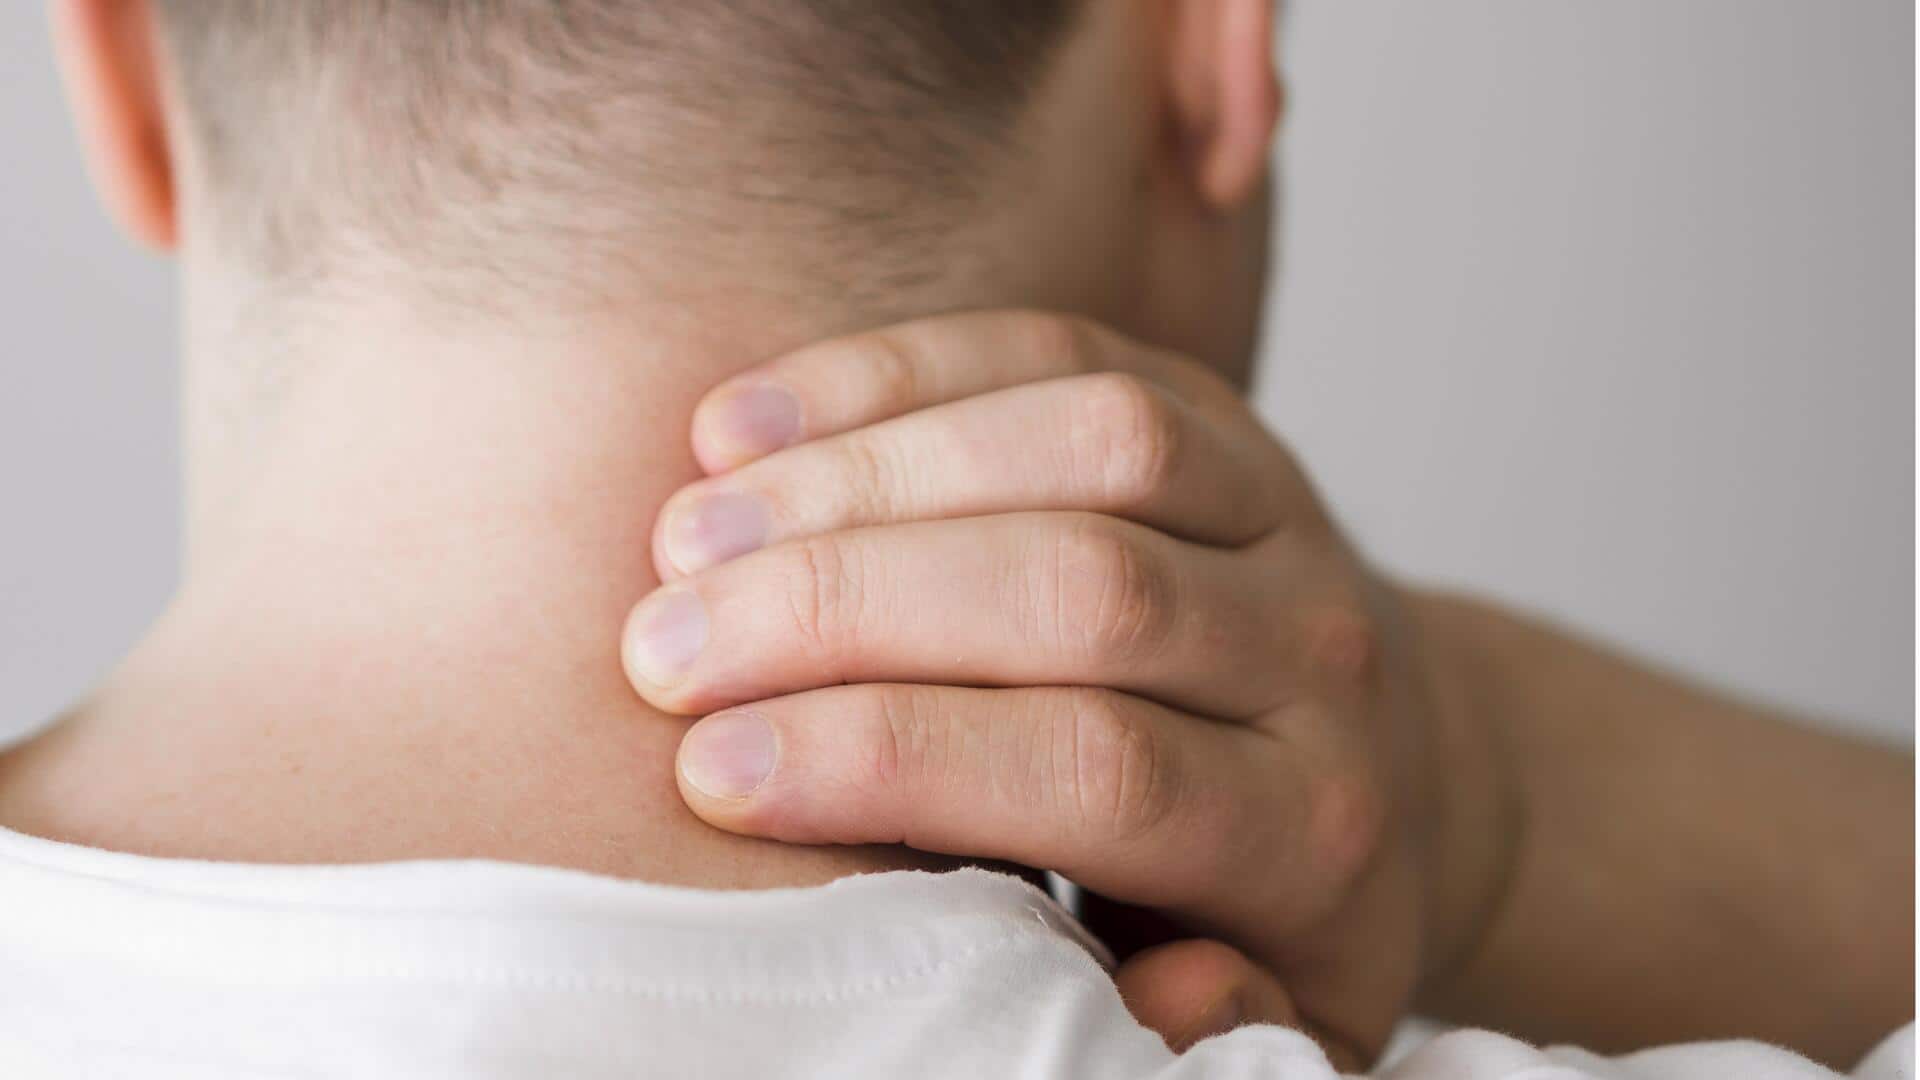 गर्दन की अकड़न और दर्द से जल्द राहत दिलाएंगे ये नुस्खे, जानिए इस्तेमाल करने का तरीका